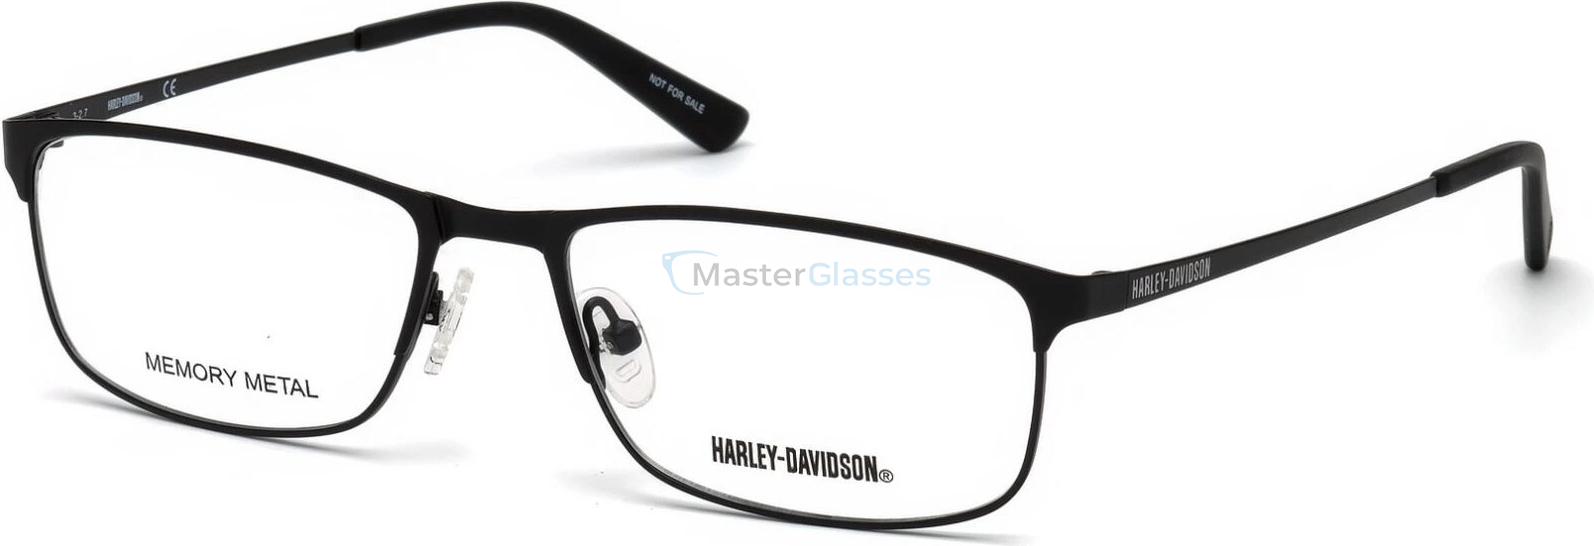 HARLEY-DAVIDSON HD 0772 002 58